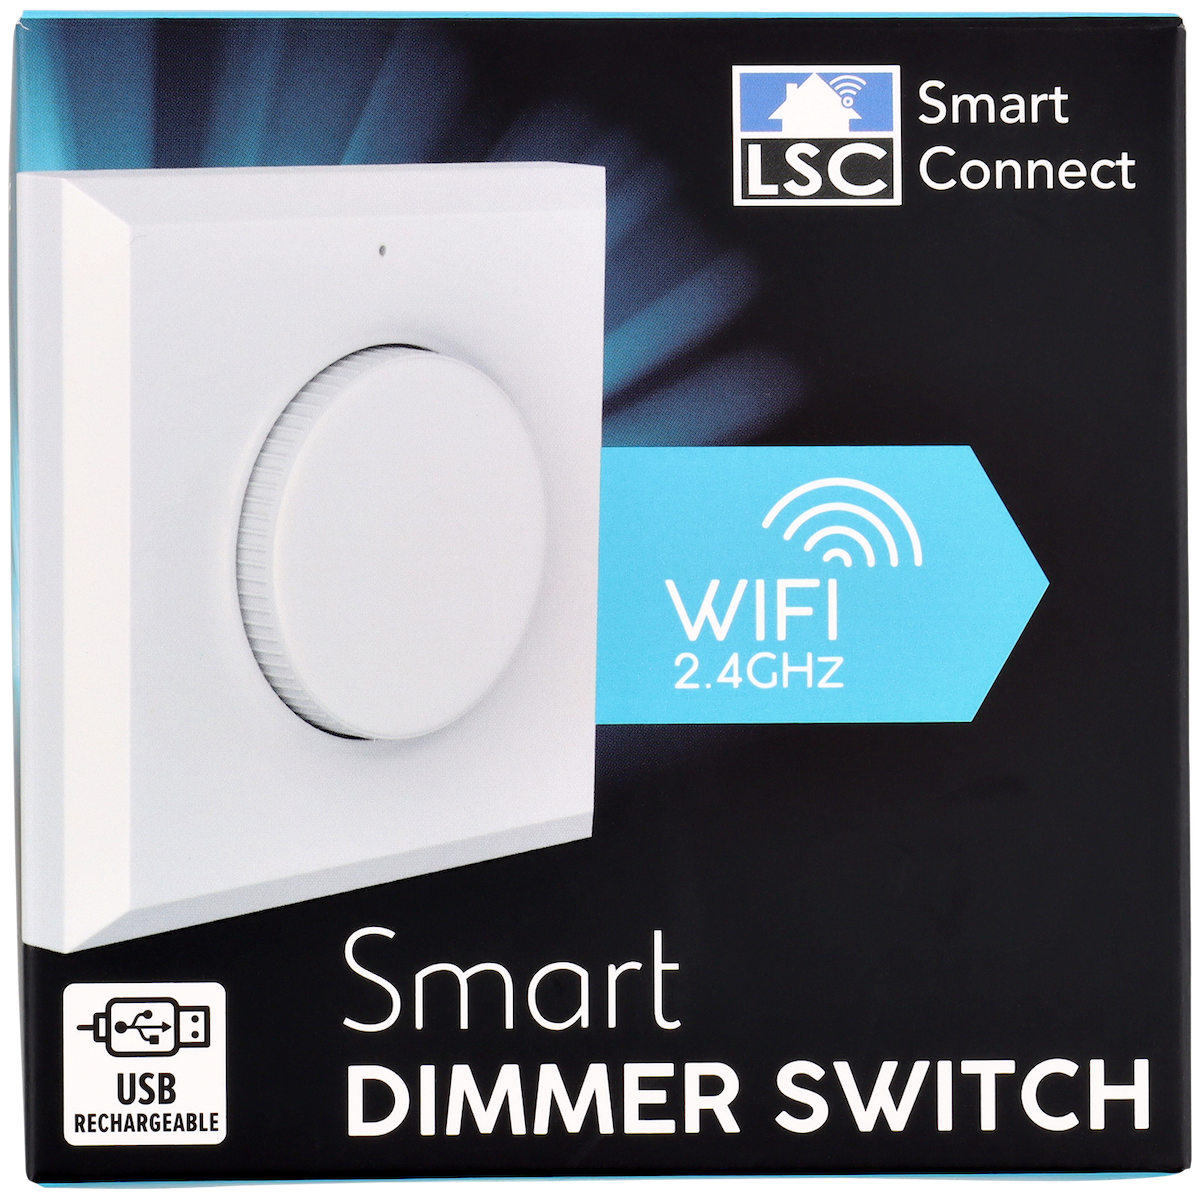 LSC Smart Connect Dimmer

8 x 8 x 2 cm - DeinMarkt.at 